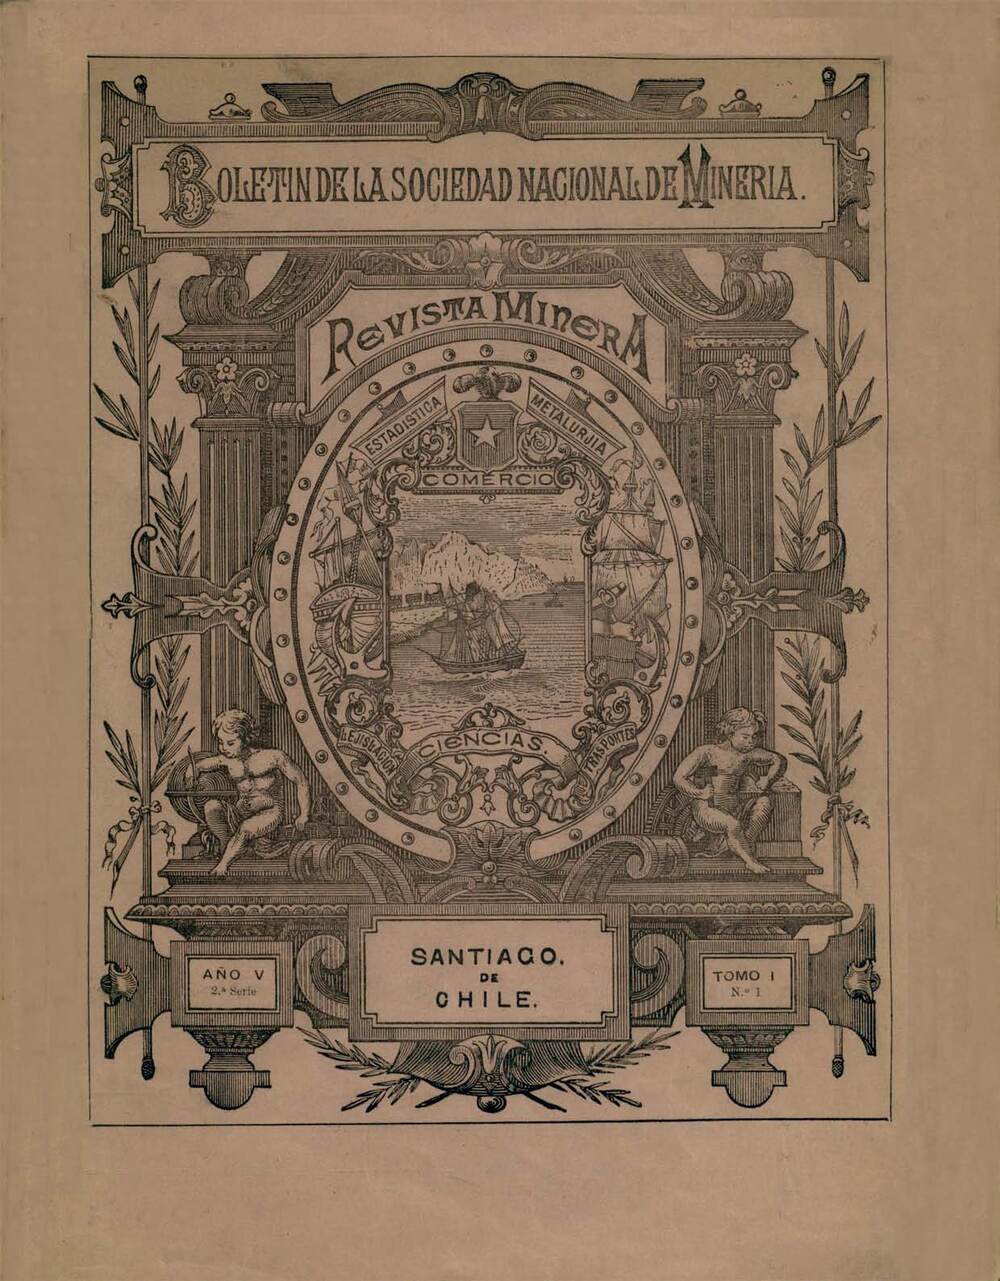 Boletín de la Sociedad Nacional de Minería, Patrimonio Cultural Común, Memoria Chilena